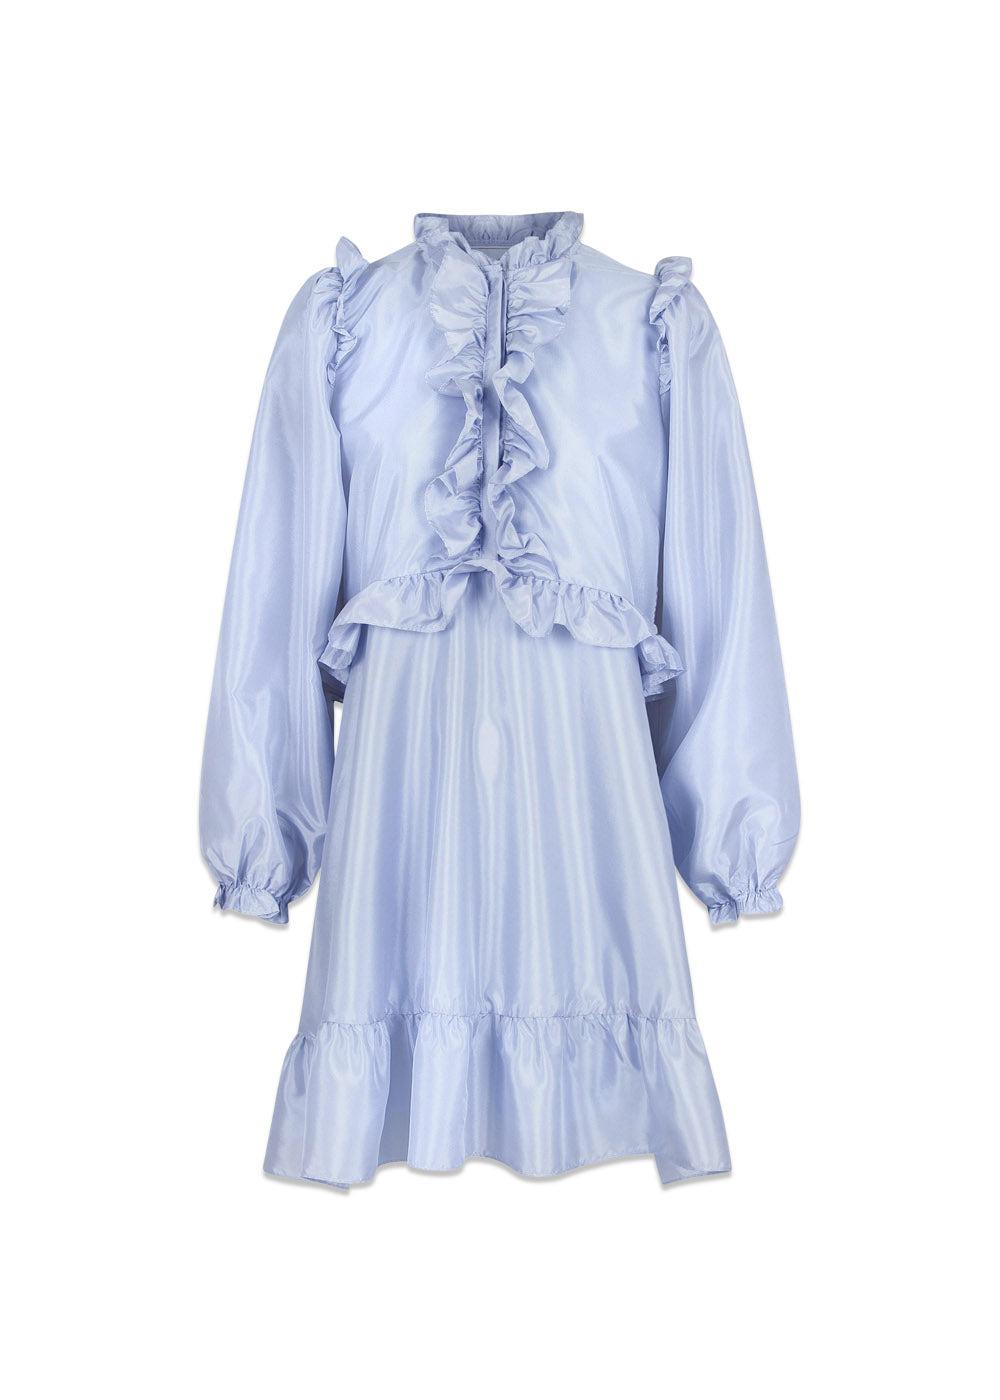 Neo Noirs Zinka Solid Dress - Light Blue. Køb kjoler her.